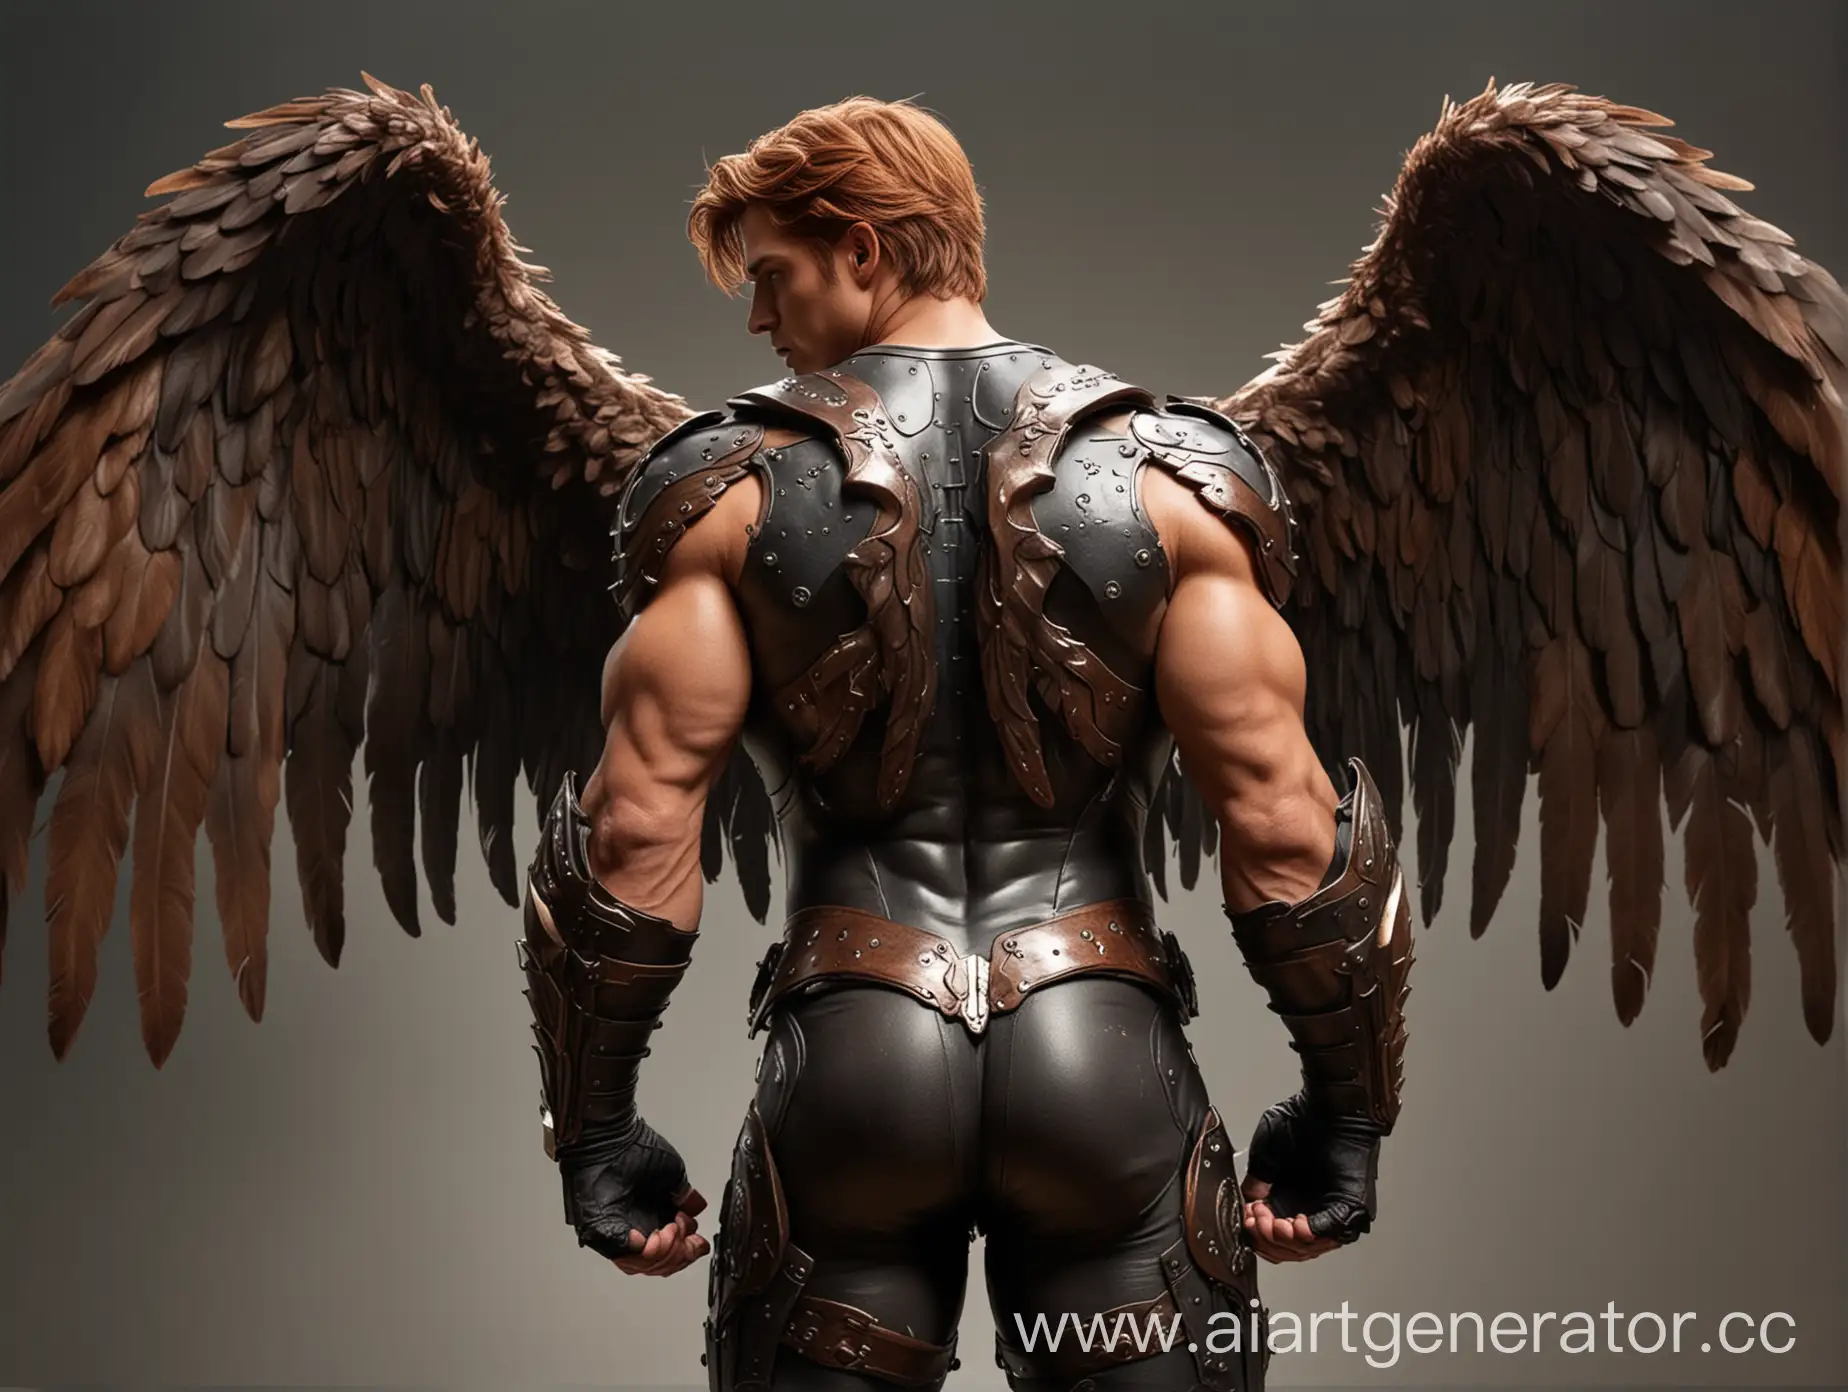 накаченный ангел мужчина с каштановым каре, бурыми крыльями в черной броне, которая покрывает всё тело. он стоит спиной к зрителю.